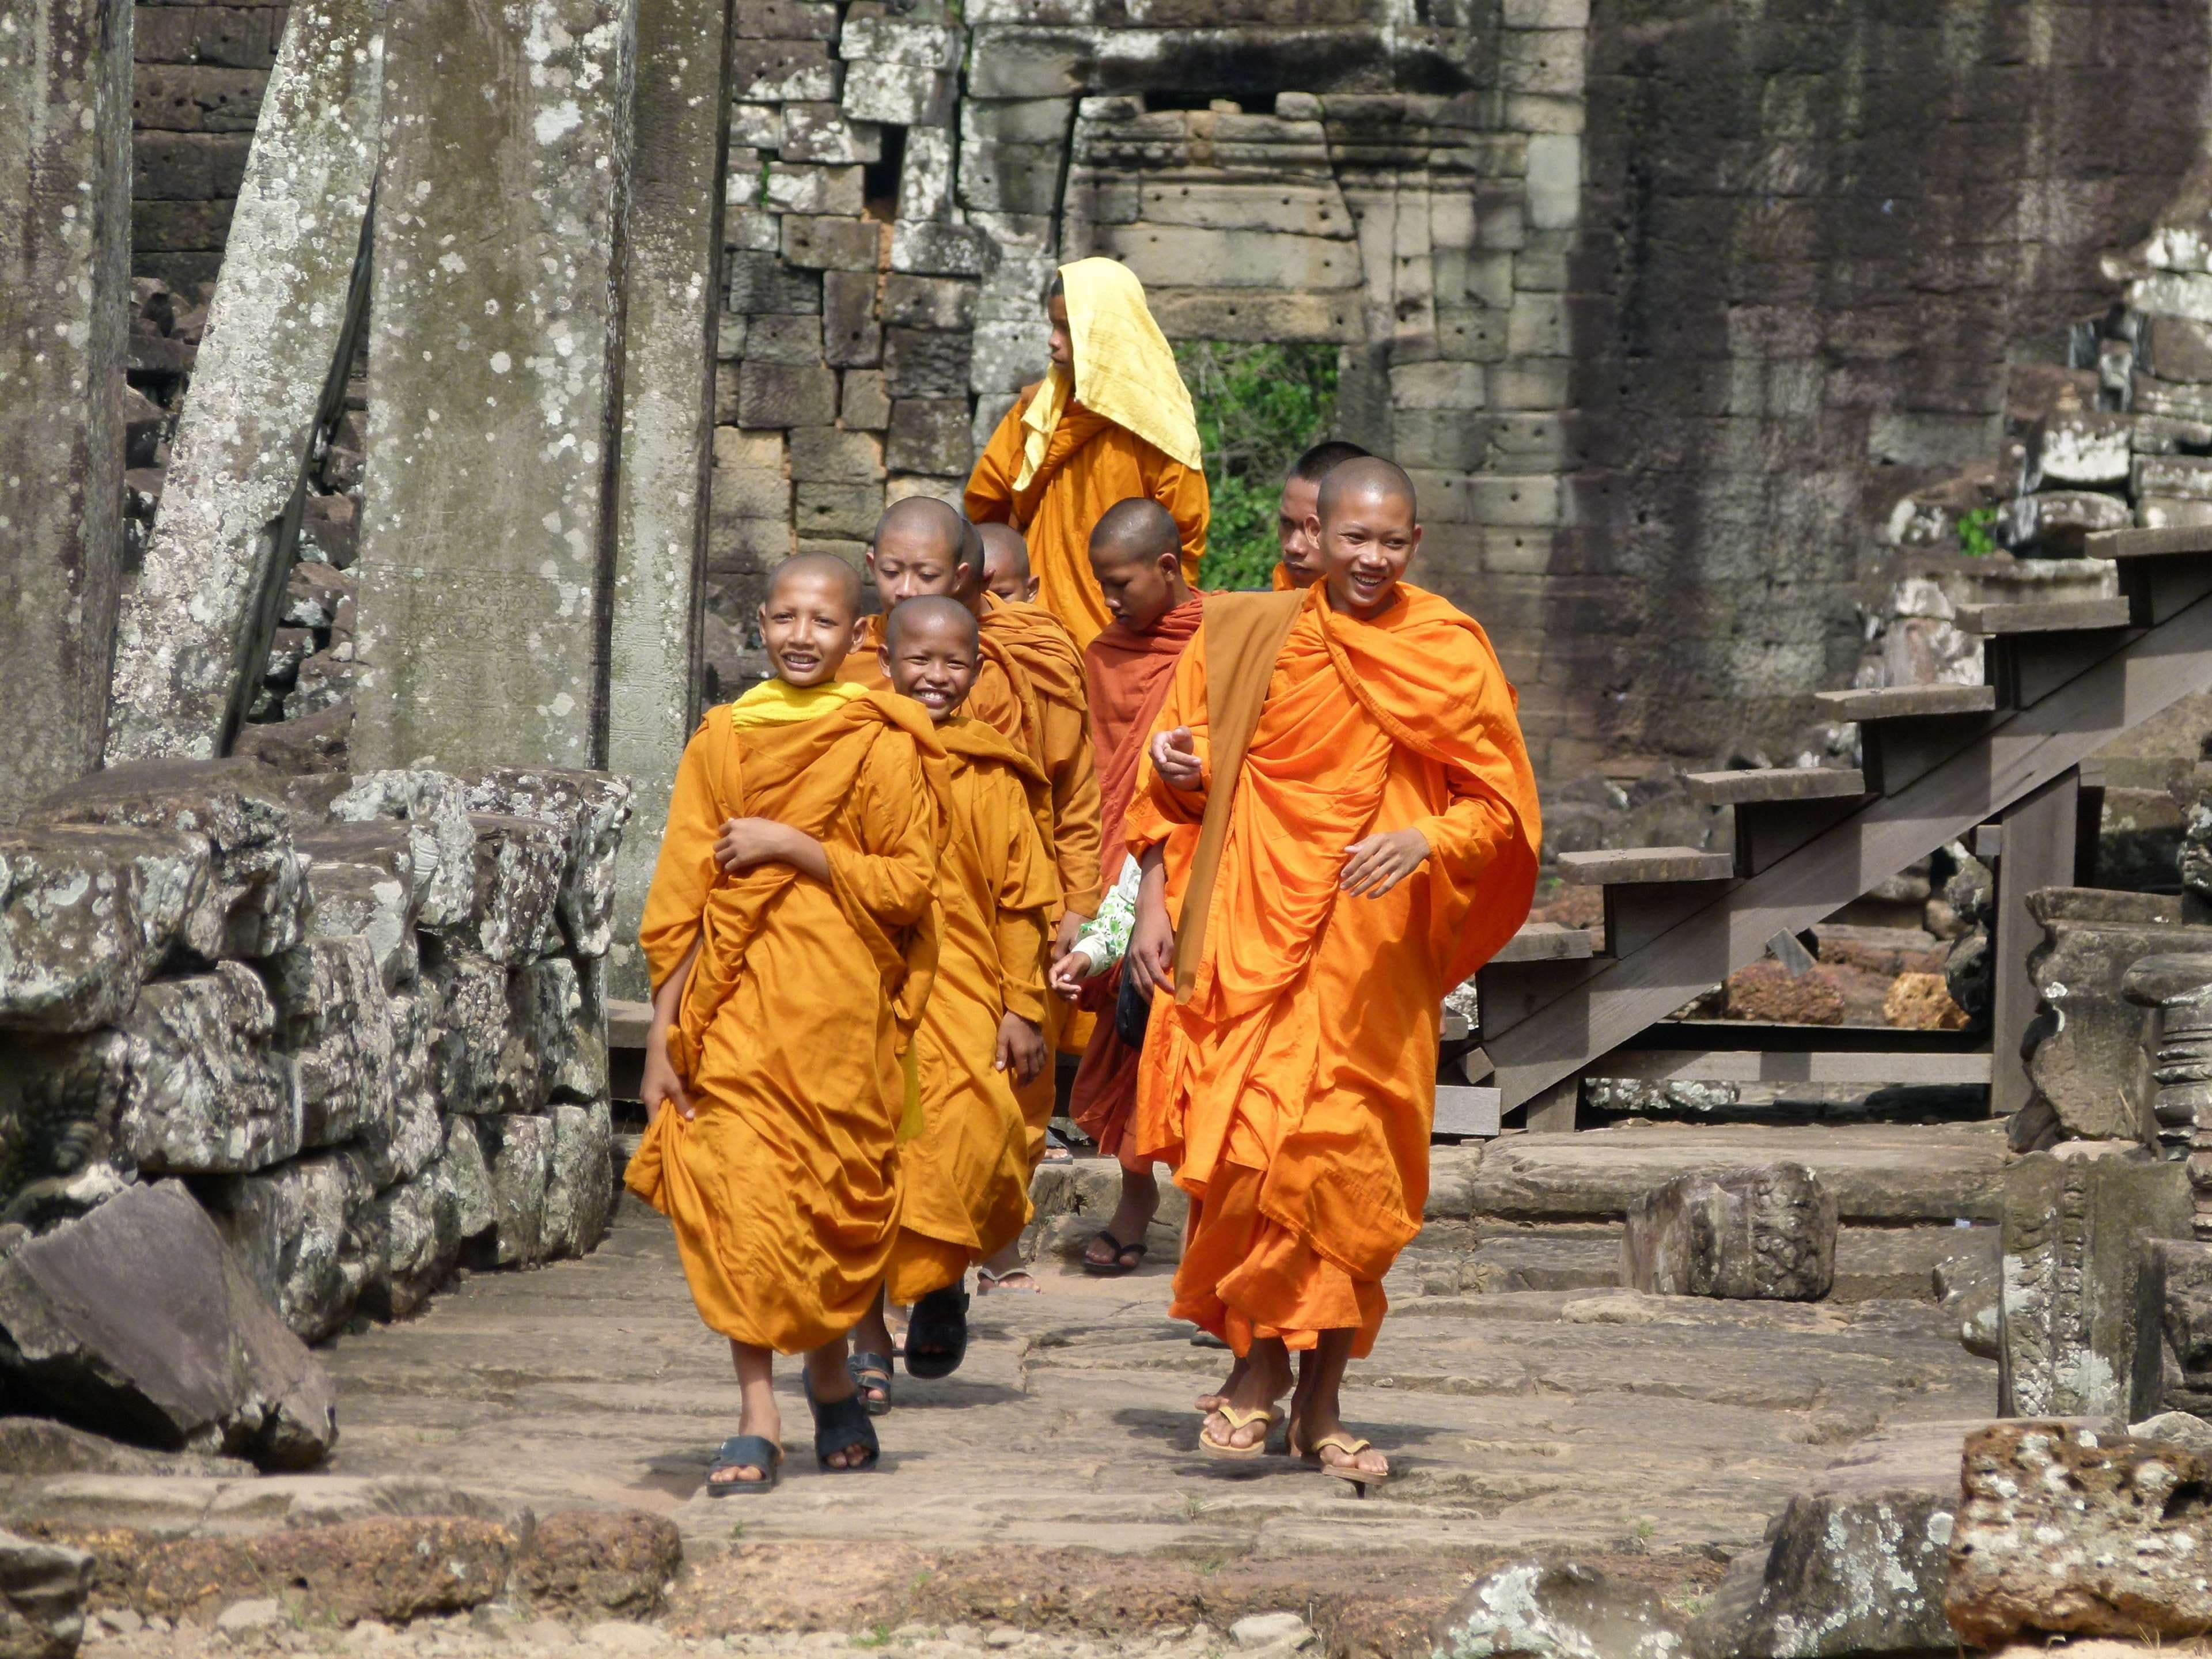 angkor, angkor wat, asia, buddhism, cambodia, monks, novice